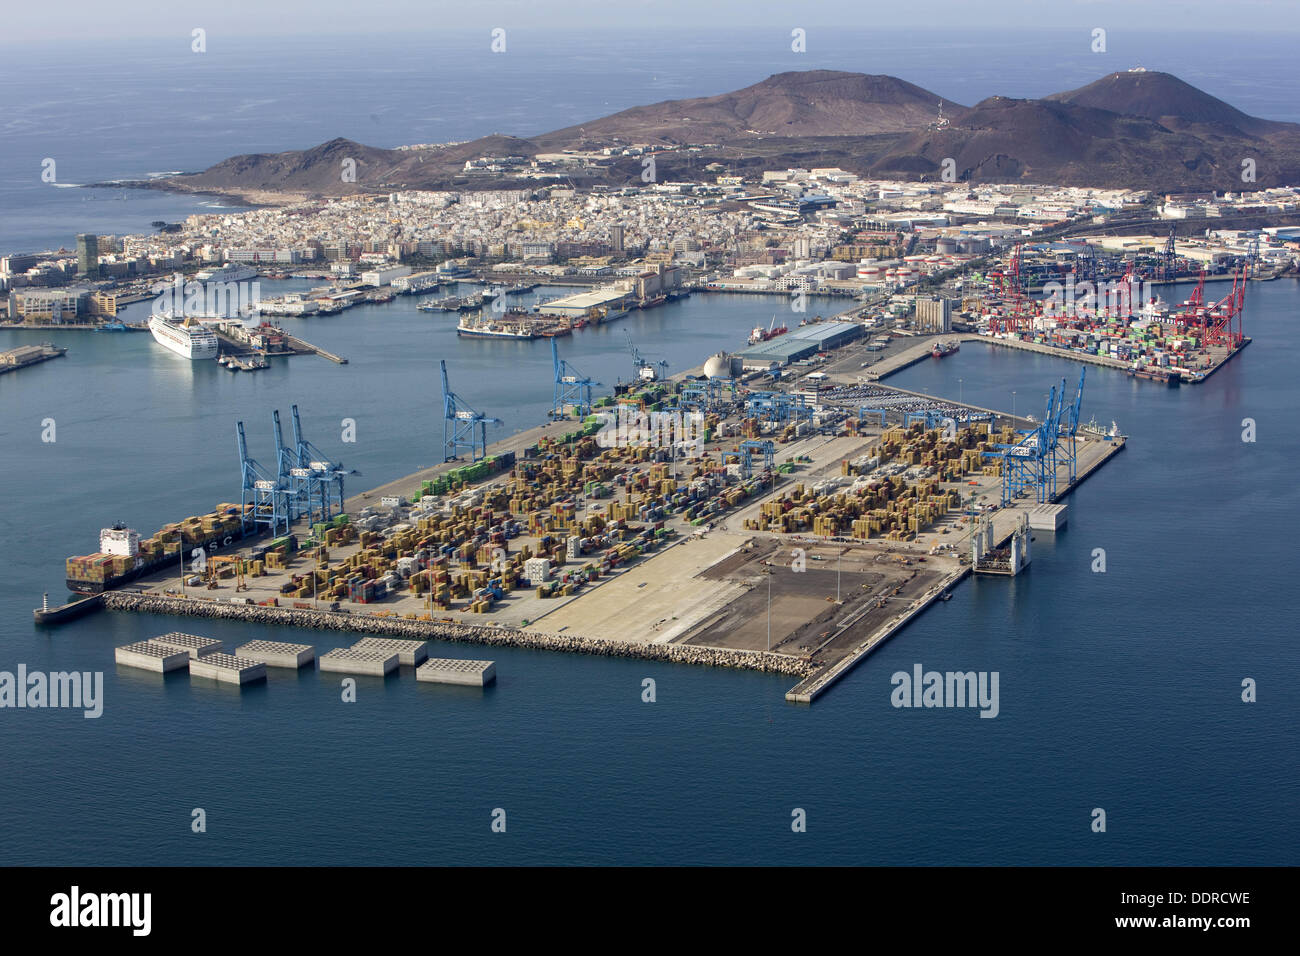 Puerto de la Luz harbour, Las Palmas de Gran Canaria, Gran Canaria, Canary  Islands, Spain Stock Photo - Alamy